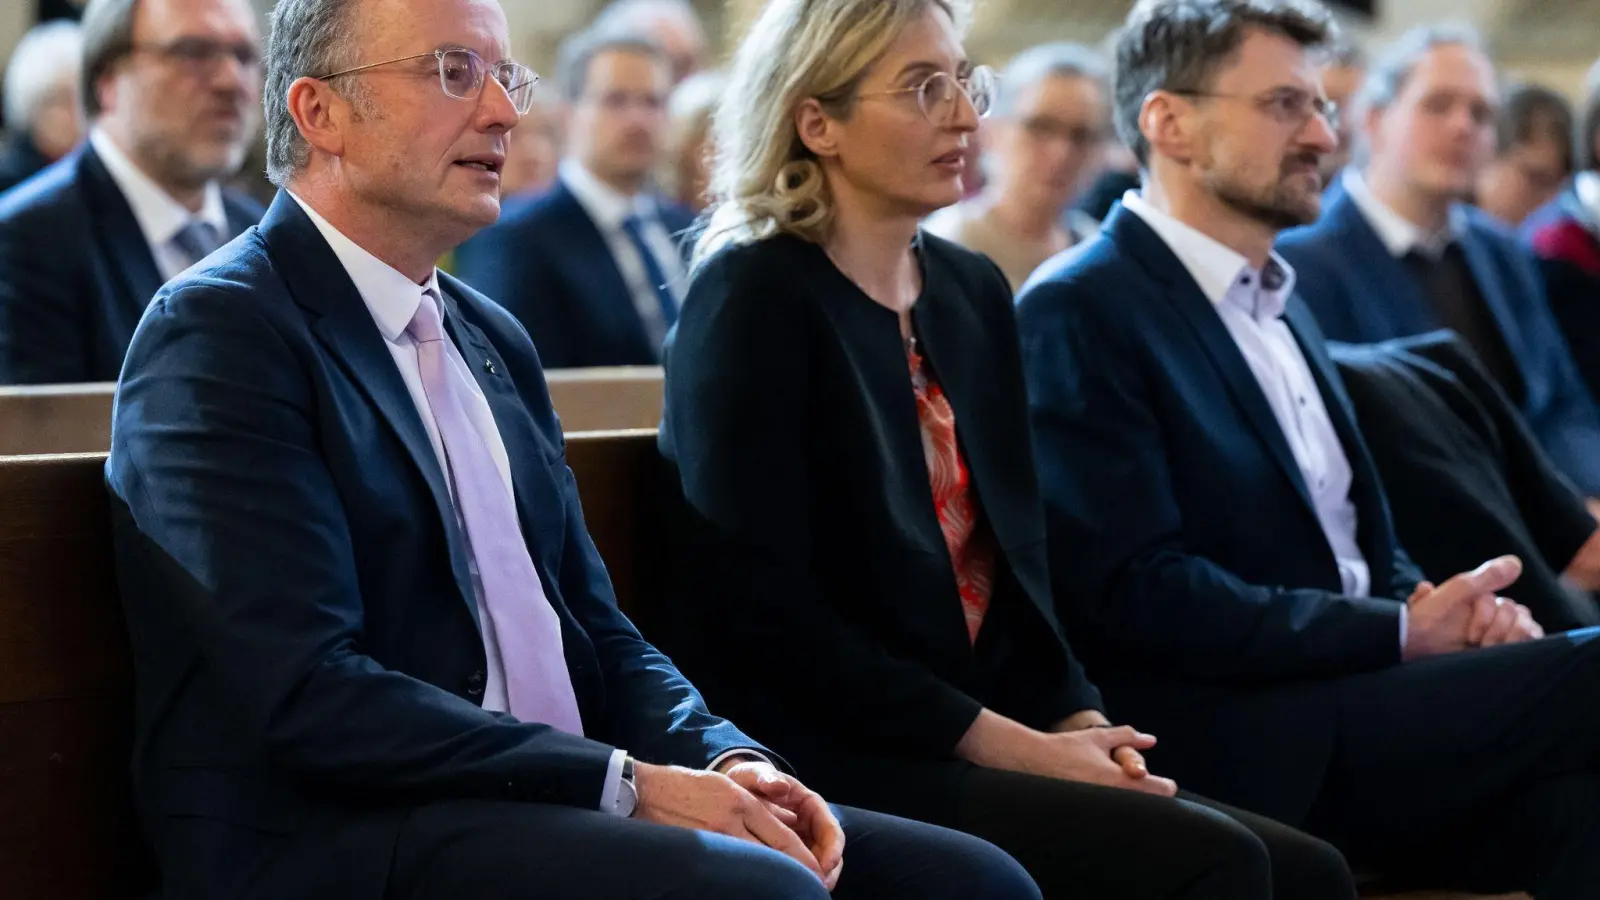 Christian Kopp (l-r), Nina Lubomierski und Klaus Schlicker, Kandidaten für die Wahl zum Landesbischof oder Landesbischöfin, nehmen an der Landessynode teil. (Foto: Sven Hoppe/dpa)